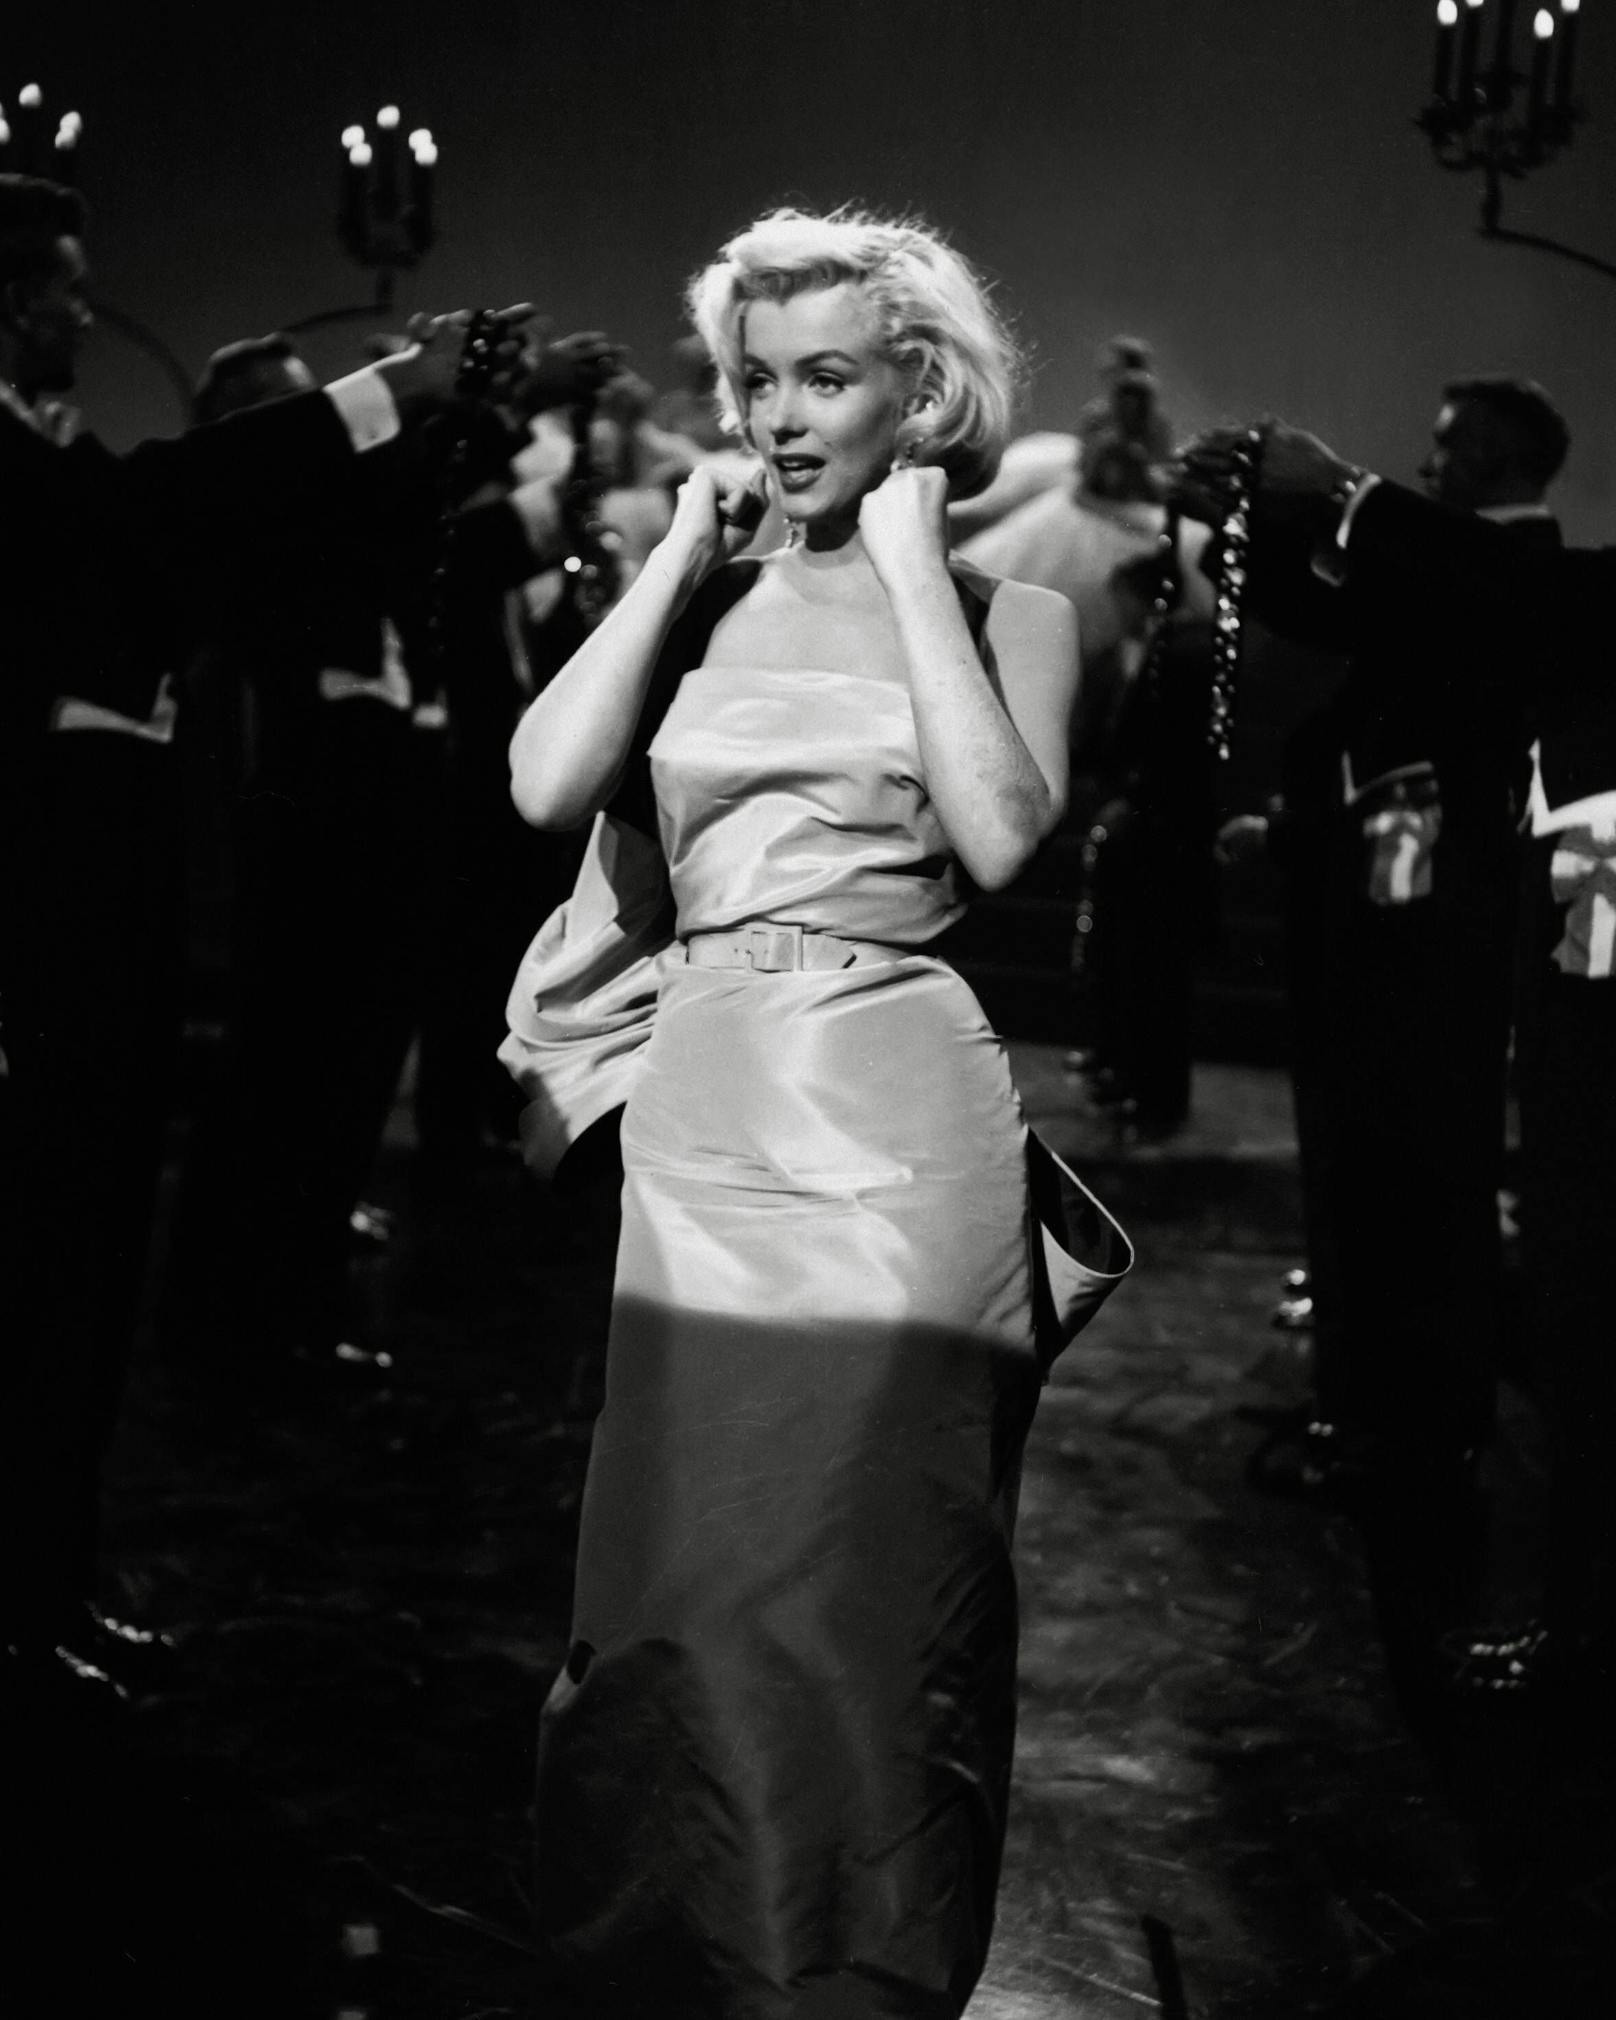 Marylin Monroe 1953 in "Blondinen bevorzugt". Die Hollywood Ikone schrieb sich mit dieser Szene in der sie "Diamond's are a girl's best friends" trällerte, in die Geschichtsbücher.